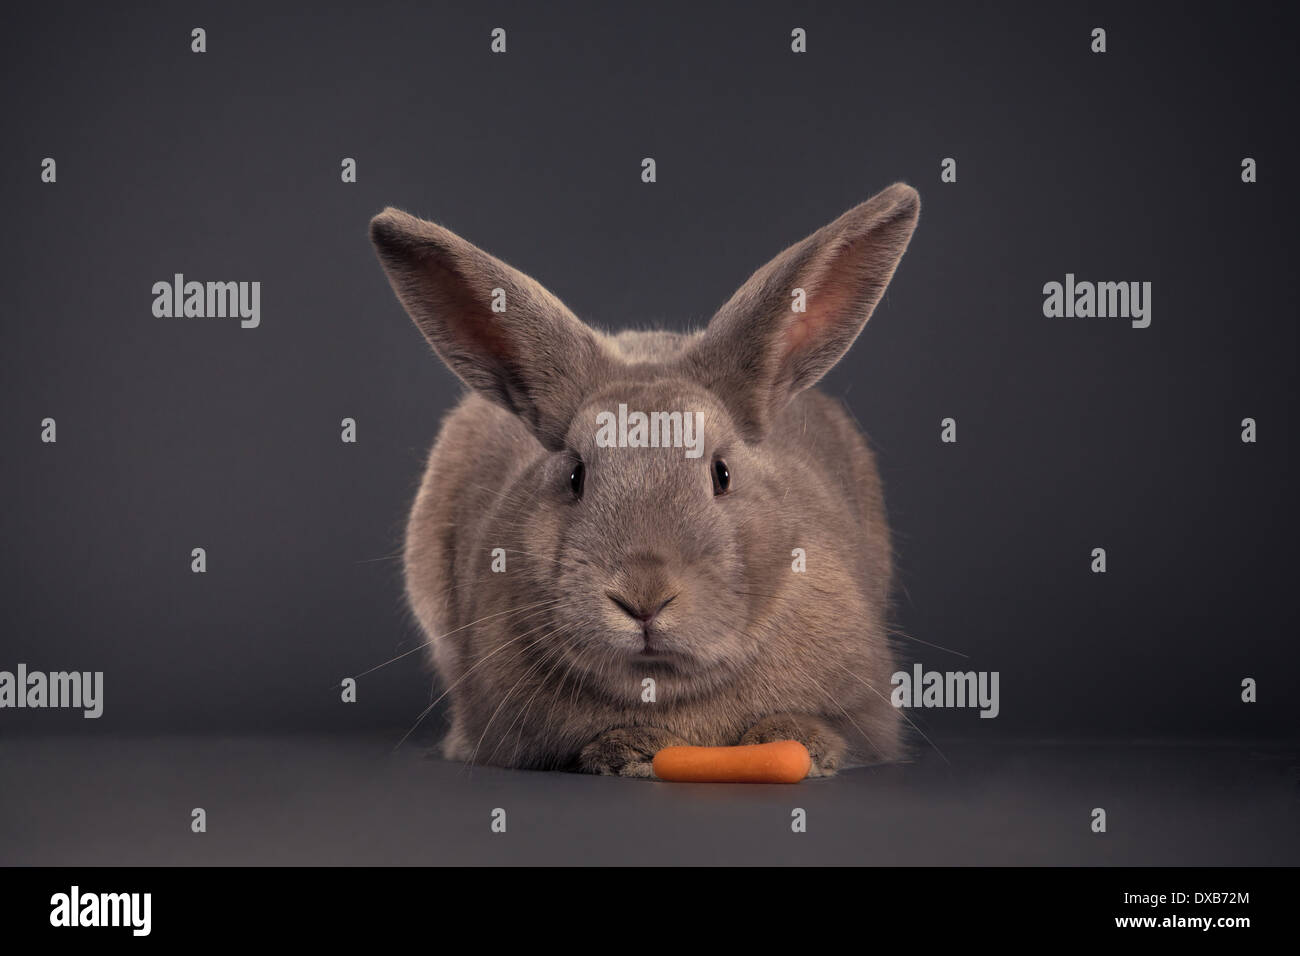 Rabbit facing camera with carrot. Stock Photo